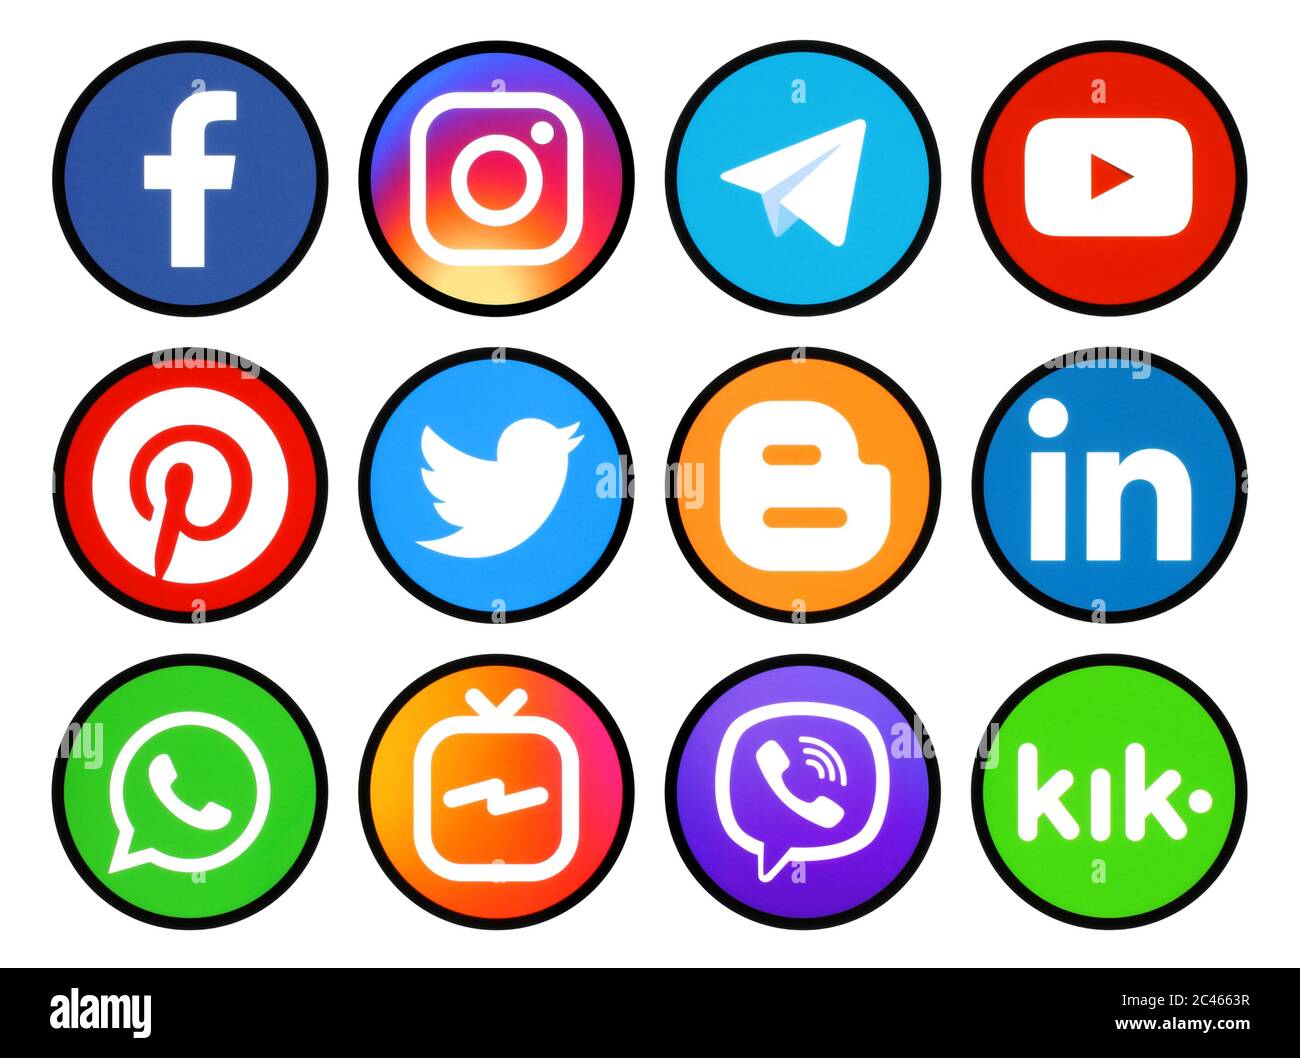 Kiev, Ukraine - 11 mars 2019 : ensemble d'icônes rondes avec bordure noire des médias sociaux imprimés sur papier : Pinterest, Twitter, Instagram, Facebook, LinkedIn, Banque D'Images